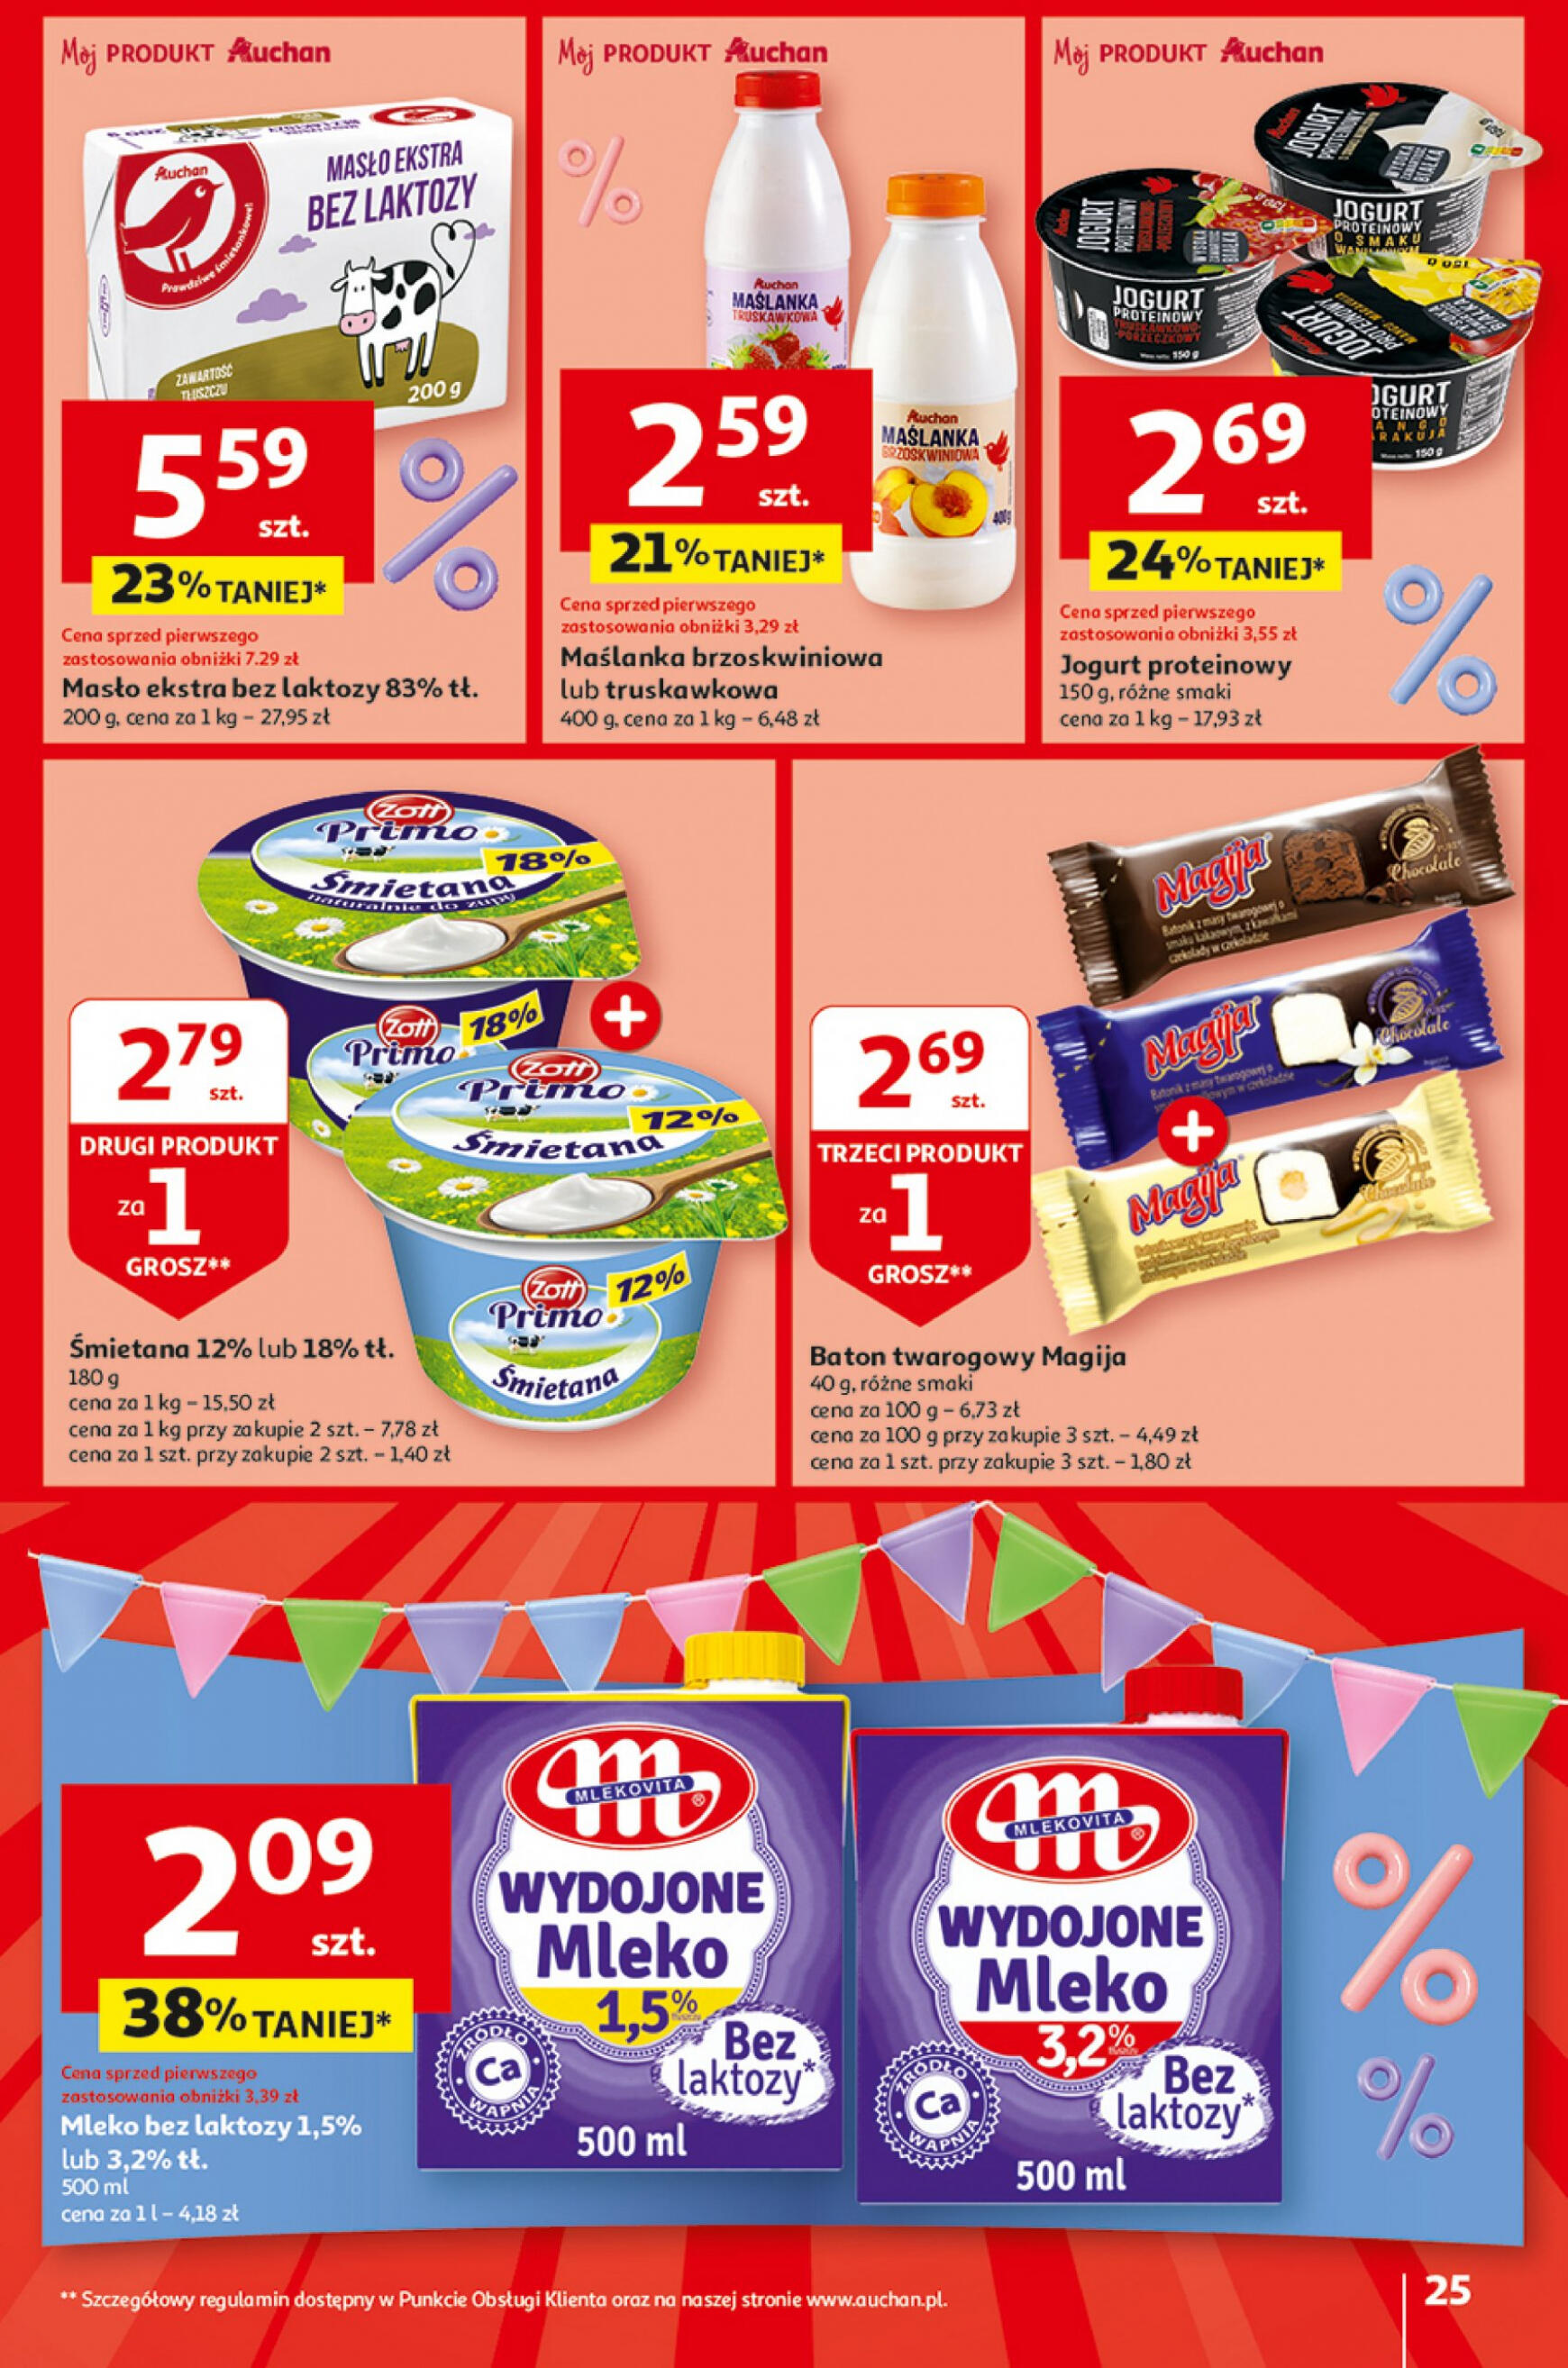 auchan - Hipermarket Auchan - Gazetka Jeszcze taniej na urodziny gazetka aktualna ważna od 25.04. - 30.04. - page: 25